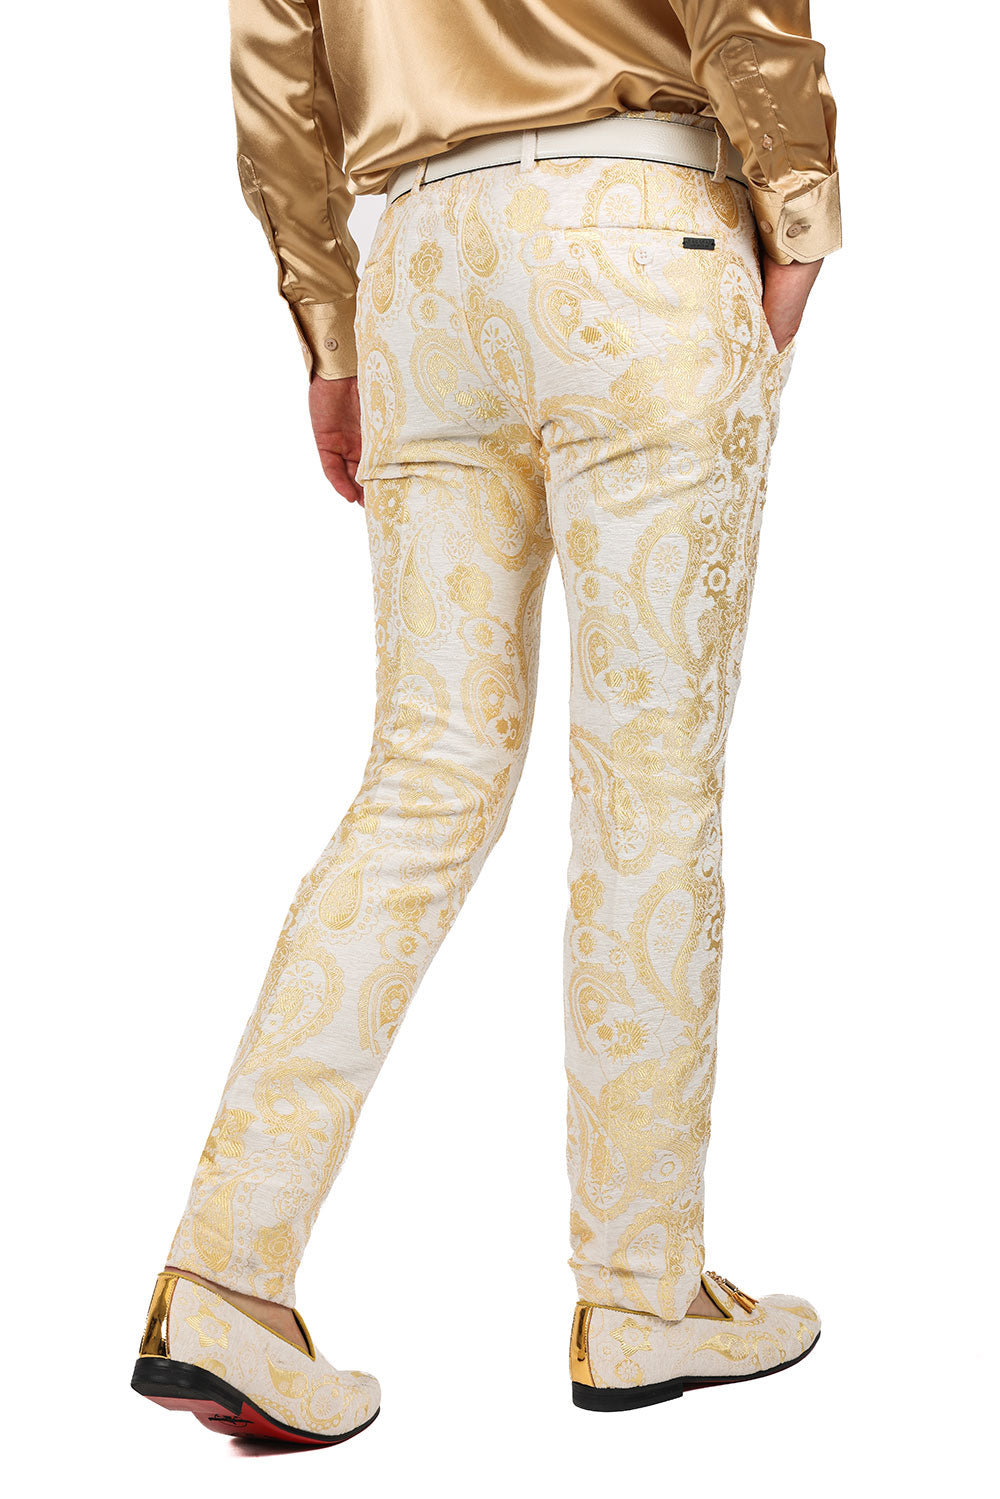 Barabas Men's Paisley Floral Print Design Luxury Pants 2CP3101 GOld